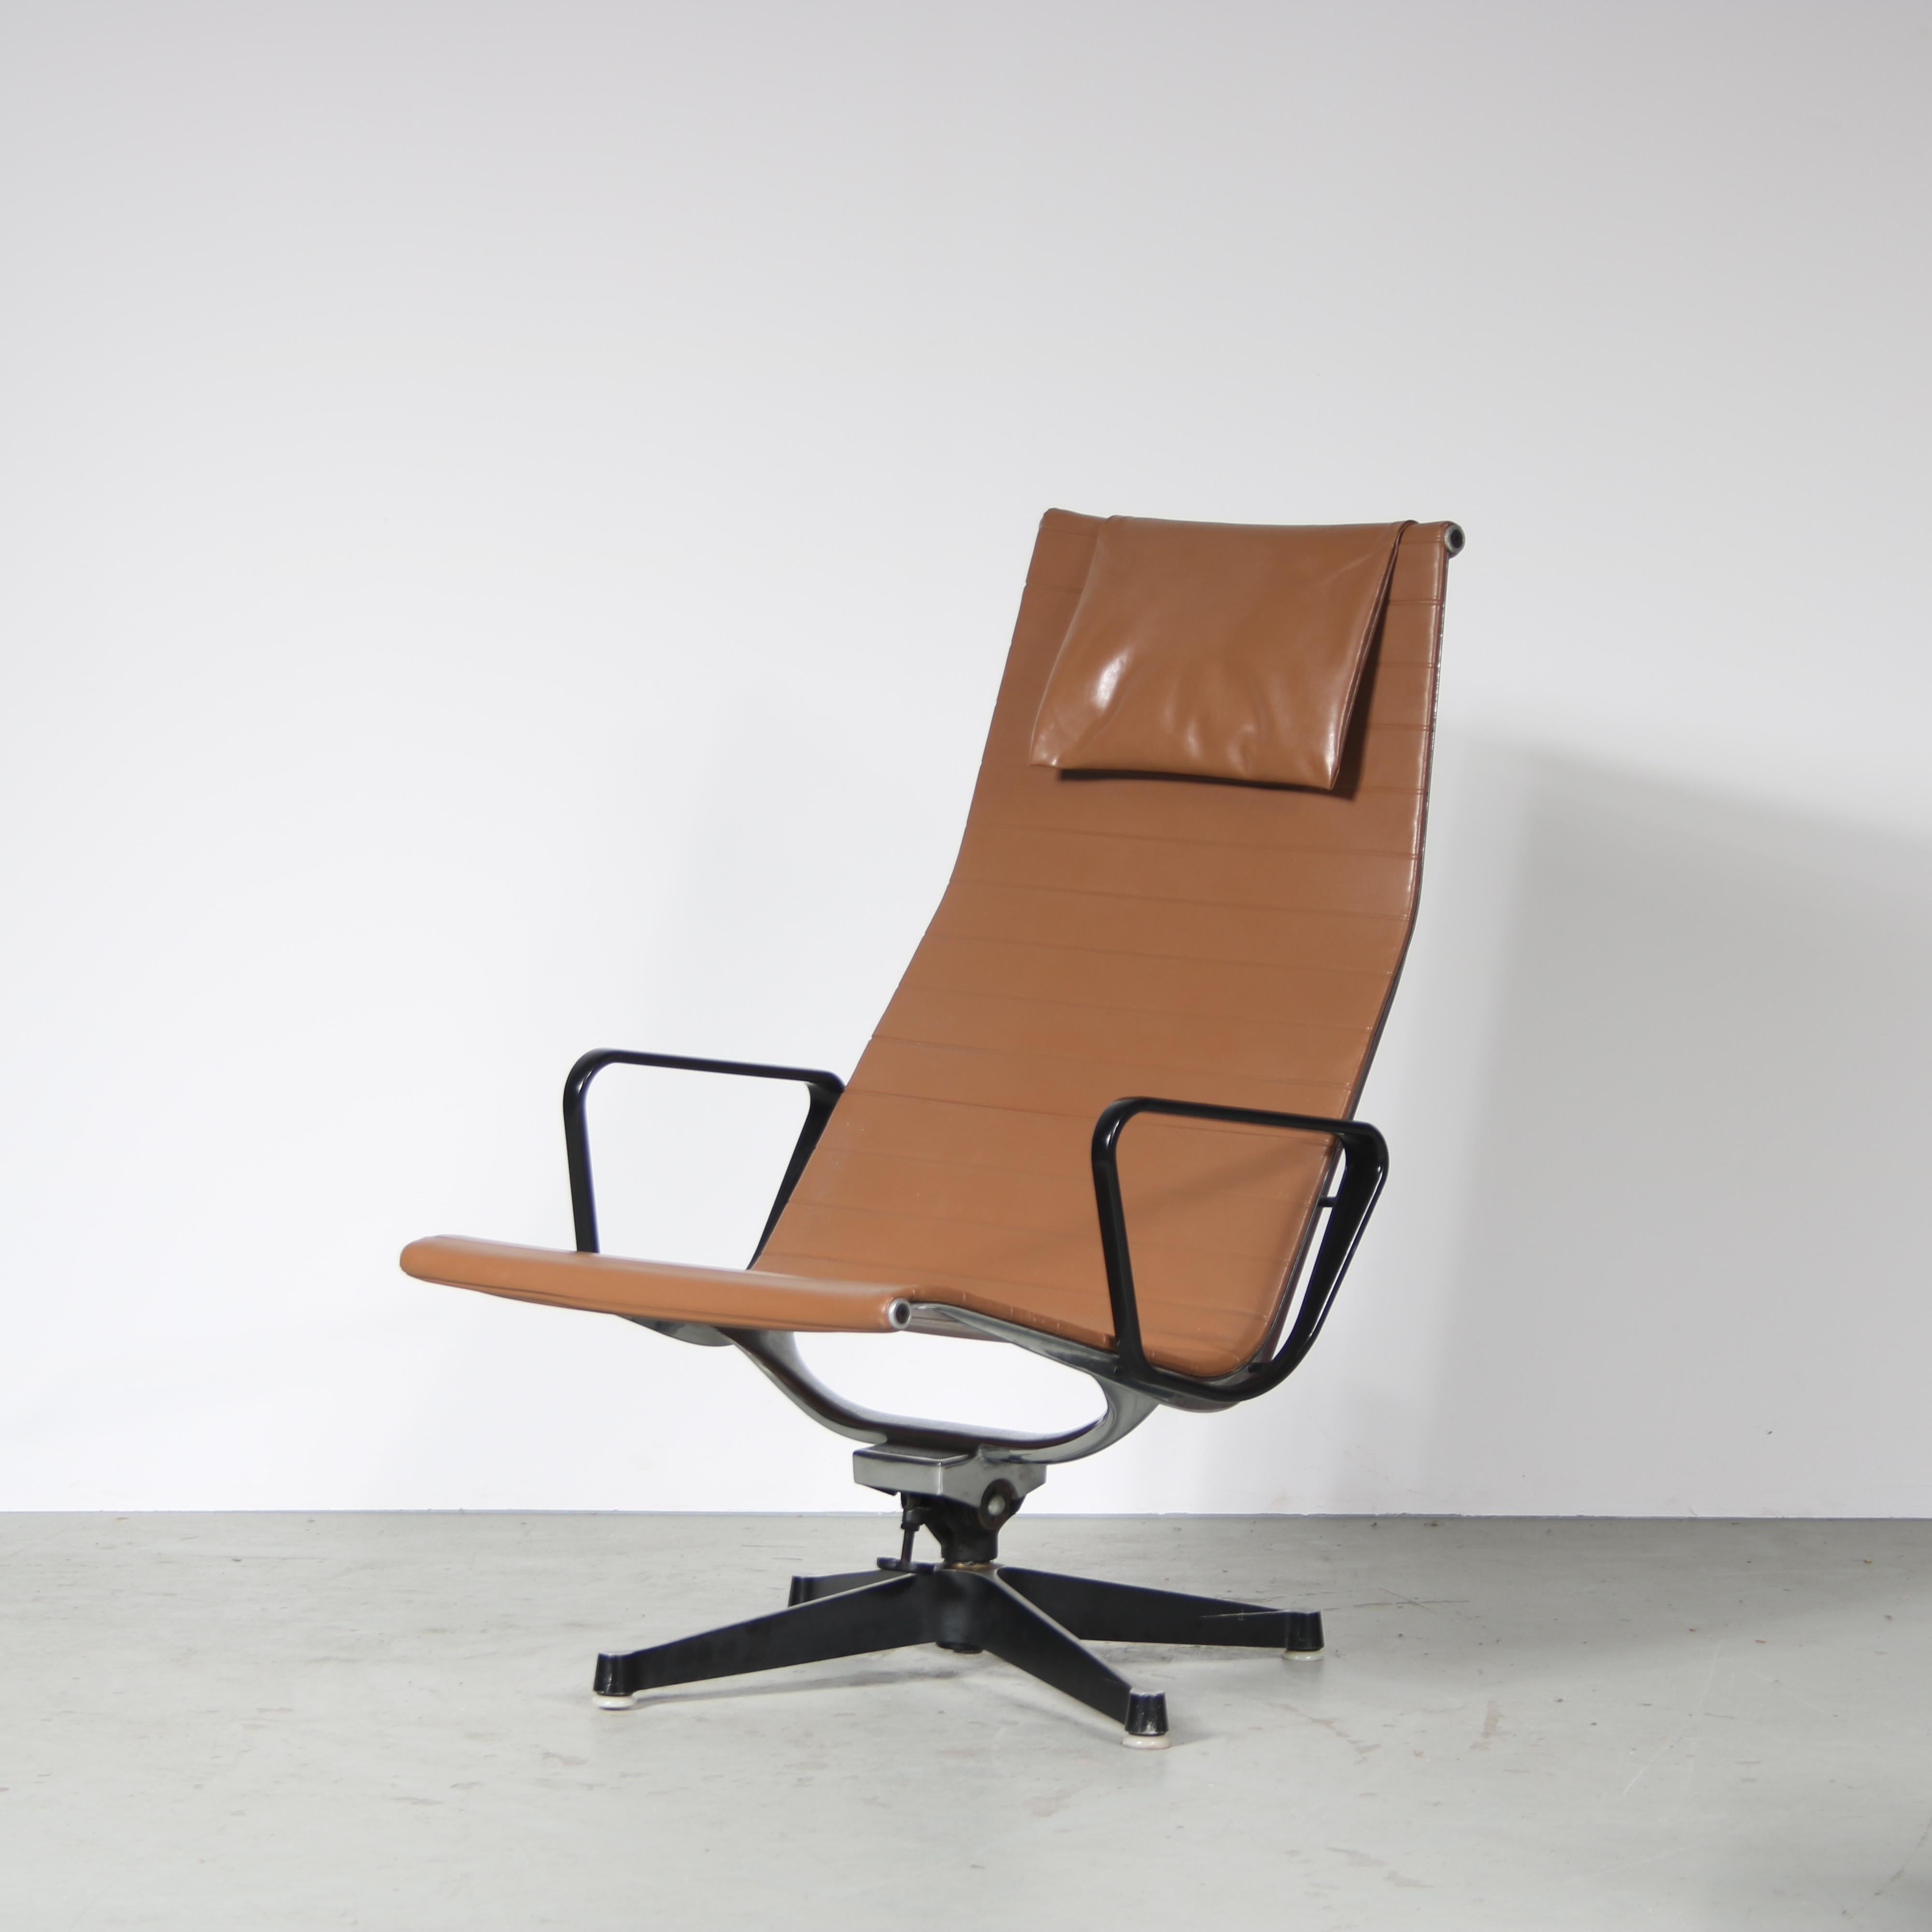 

Magnifique chaise longue, modèle EA 124, conçue par Charles & Ray Eames et fabriquée par Herman Miller aux États-Unis vers 1960.

Cette chaise accrocheuse est une pièce très reconnaissable du design du milieu du siècle ! Il est doté d'un cadre en